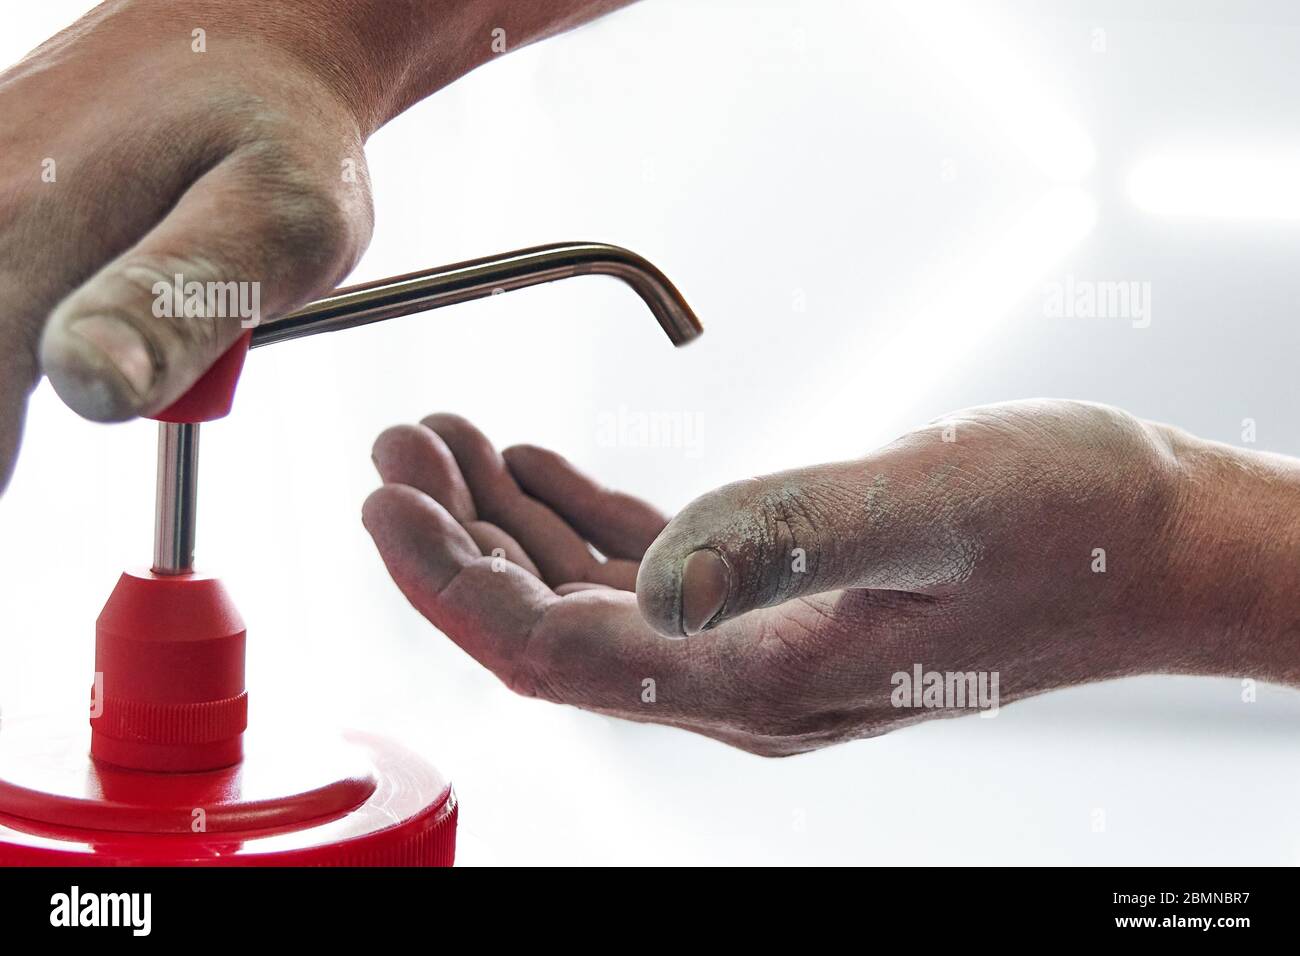 Mechaniker waschen schmutzige Hände mit Seife nach der Arbeit  Stockfotografie - Alamy